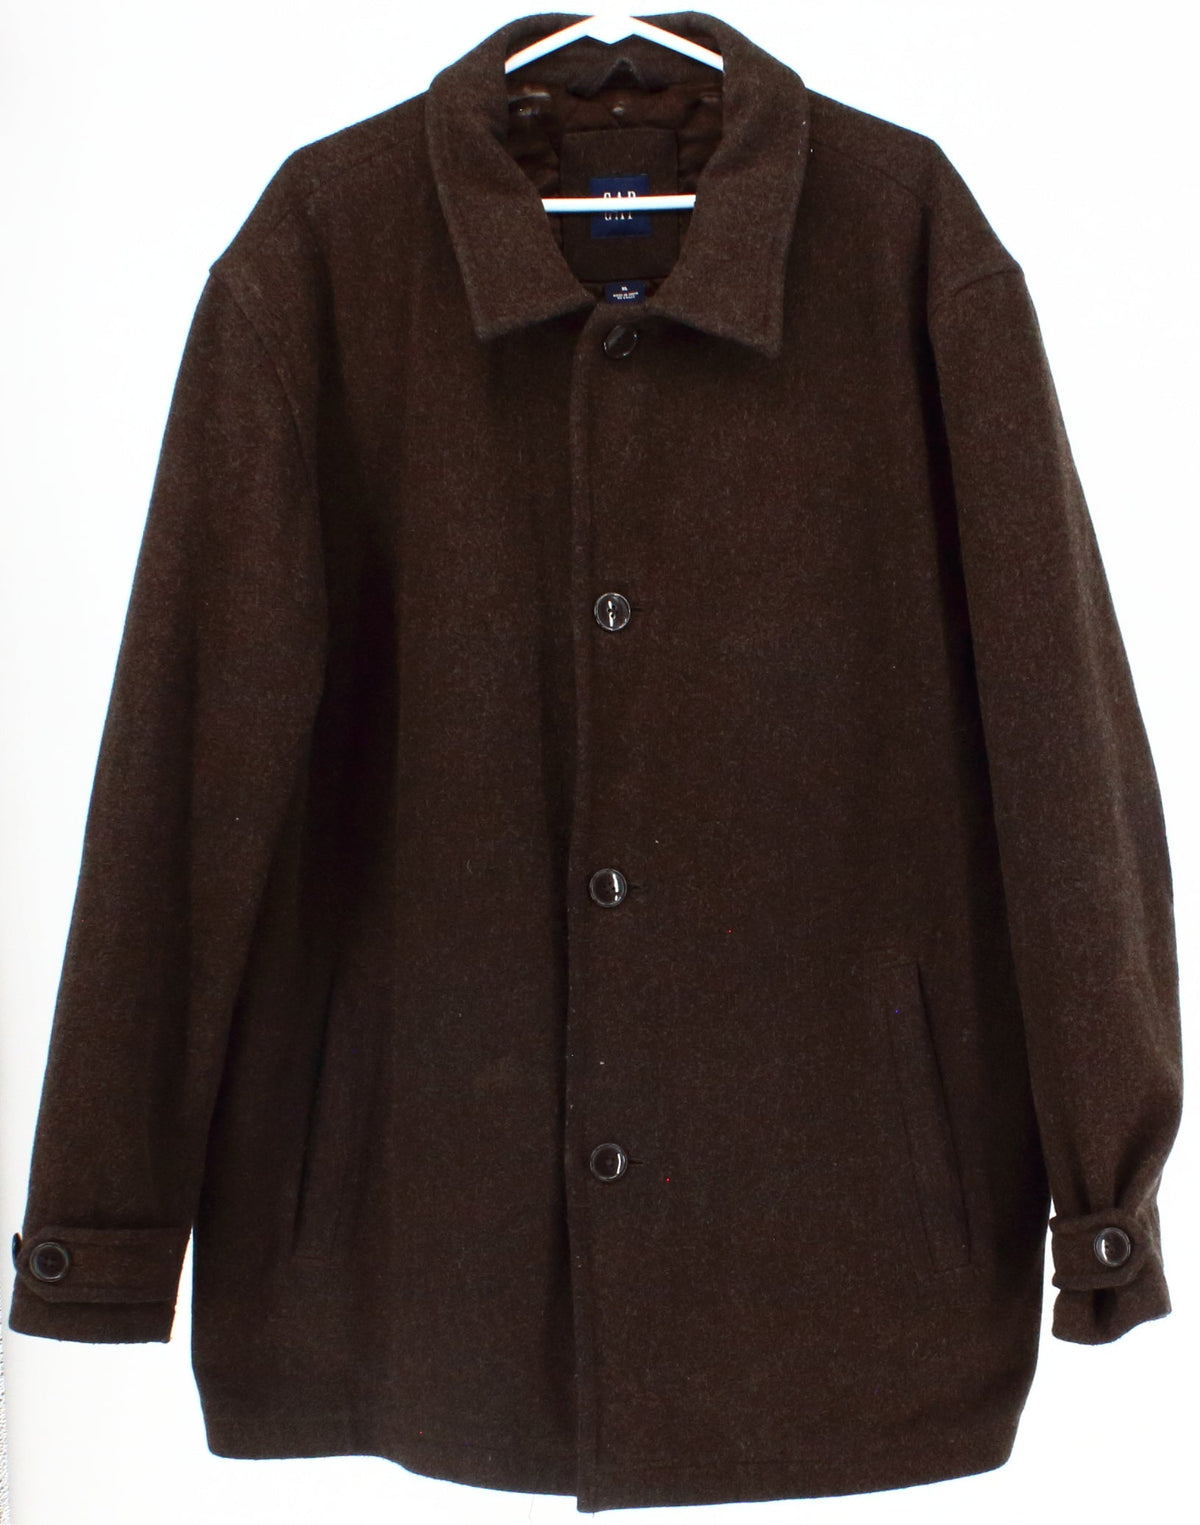 Gap Dark Brown Men's Wool Coat With Quilt Lining